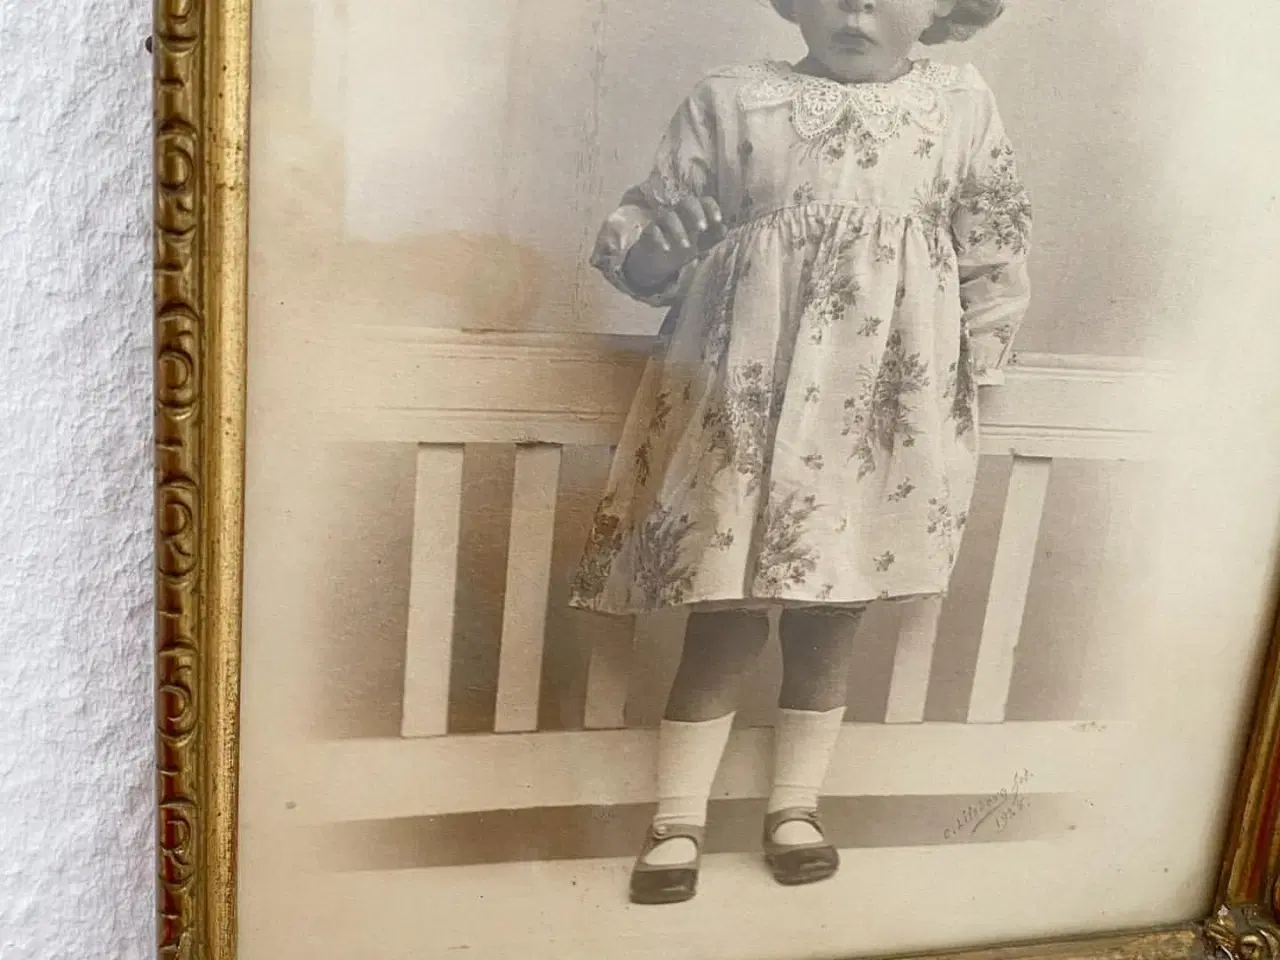 Billede 5 - Sort/hvid foto af lille pige i guldramme, dat. 1928